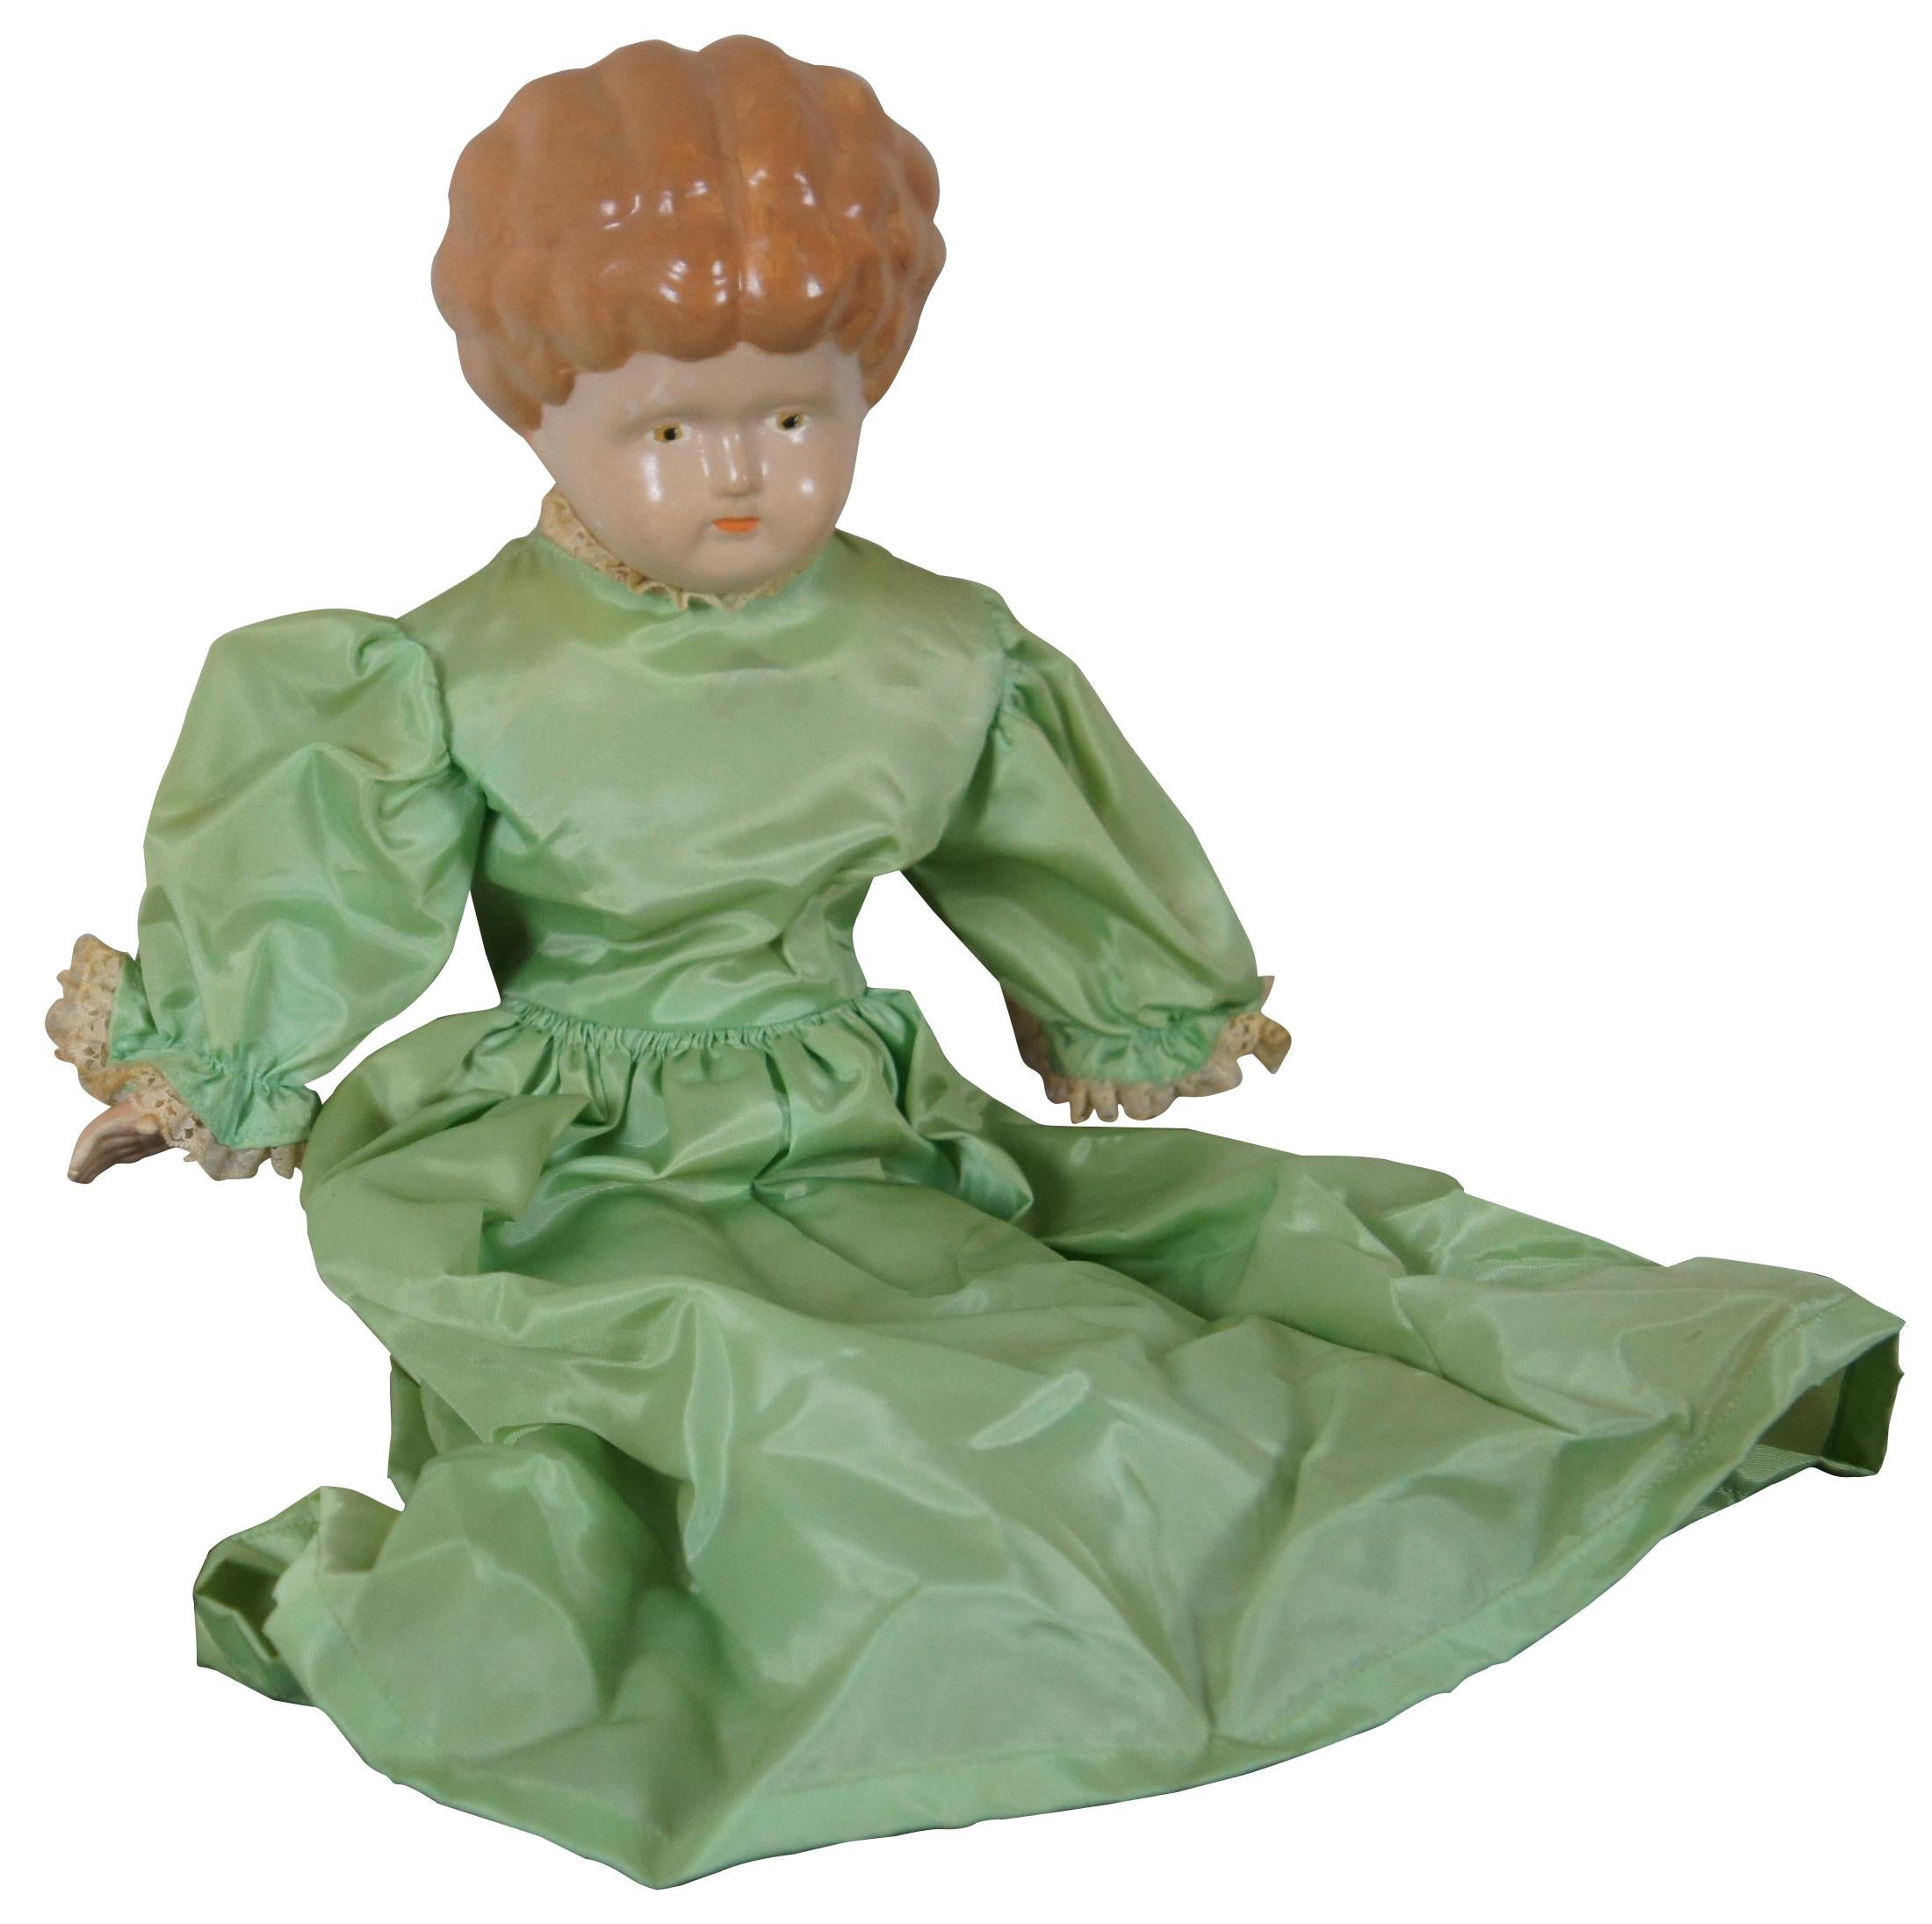 Poupée allemande en porcelaine, datant du milieu du XIXe siècle, avec buste, pieds et mains en porcelaine peinte, corps en tissu et robe verte. Mesures : 18